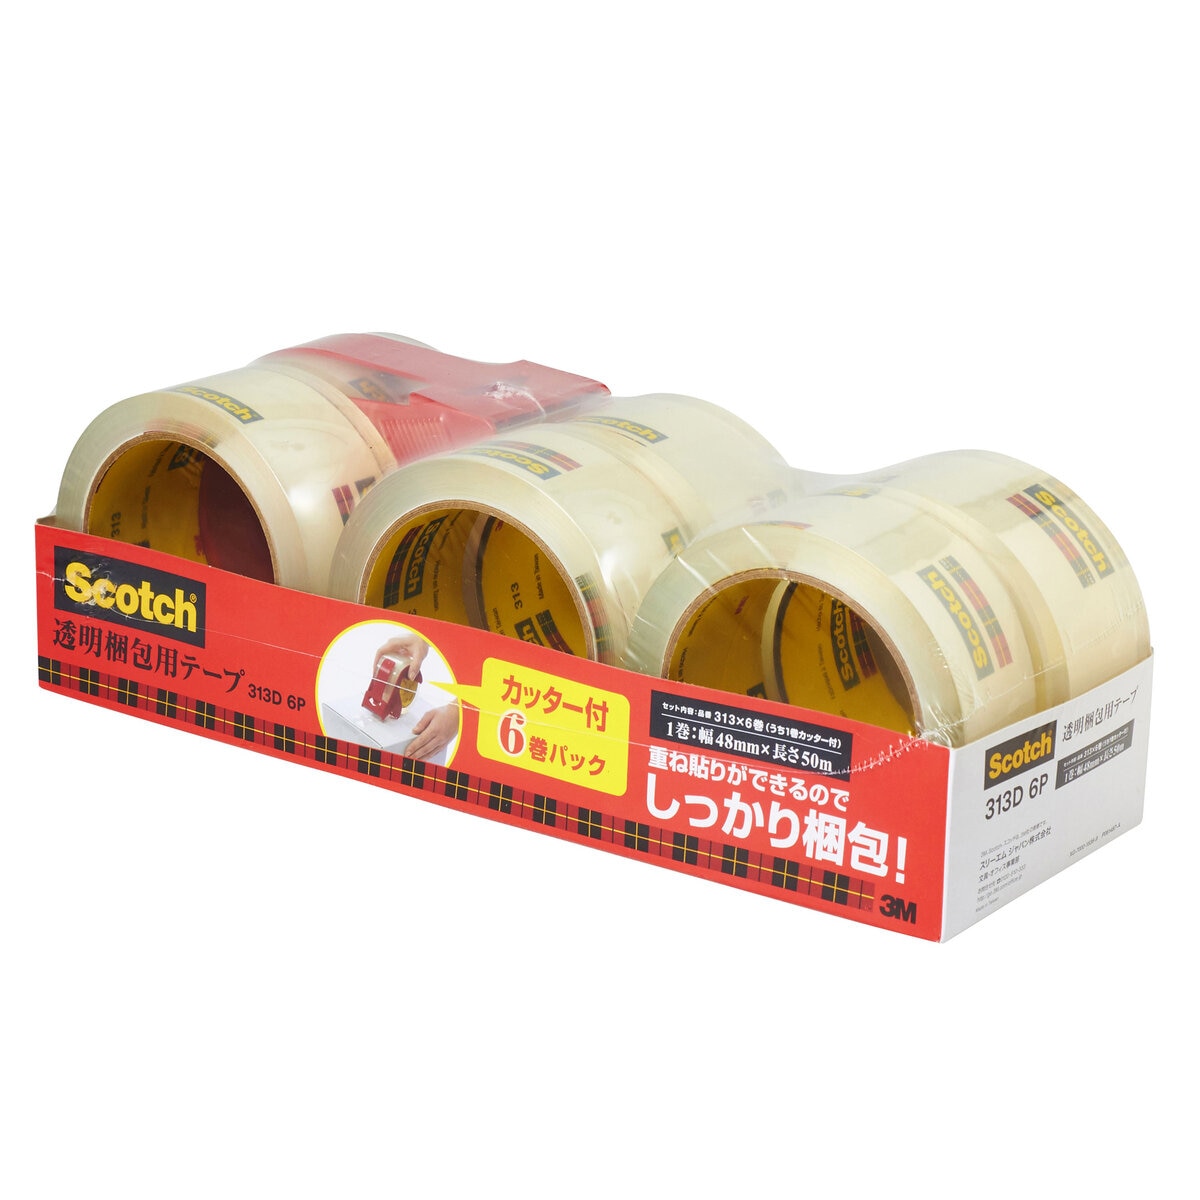 スリーエム スコッチ梱包用テープ 6巻セット カッター付き | Costco Japan